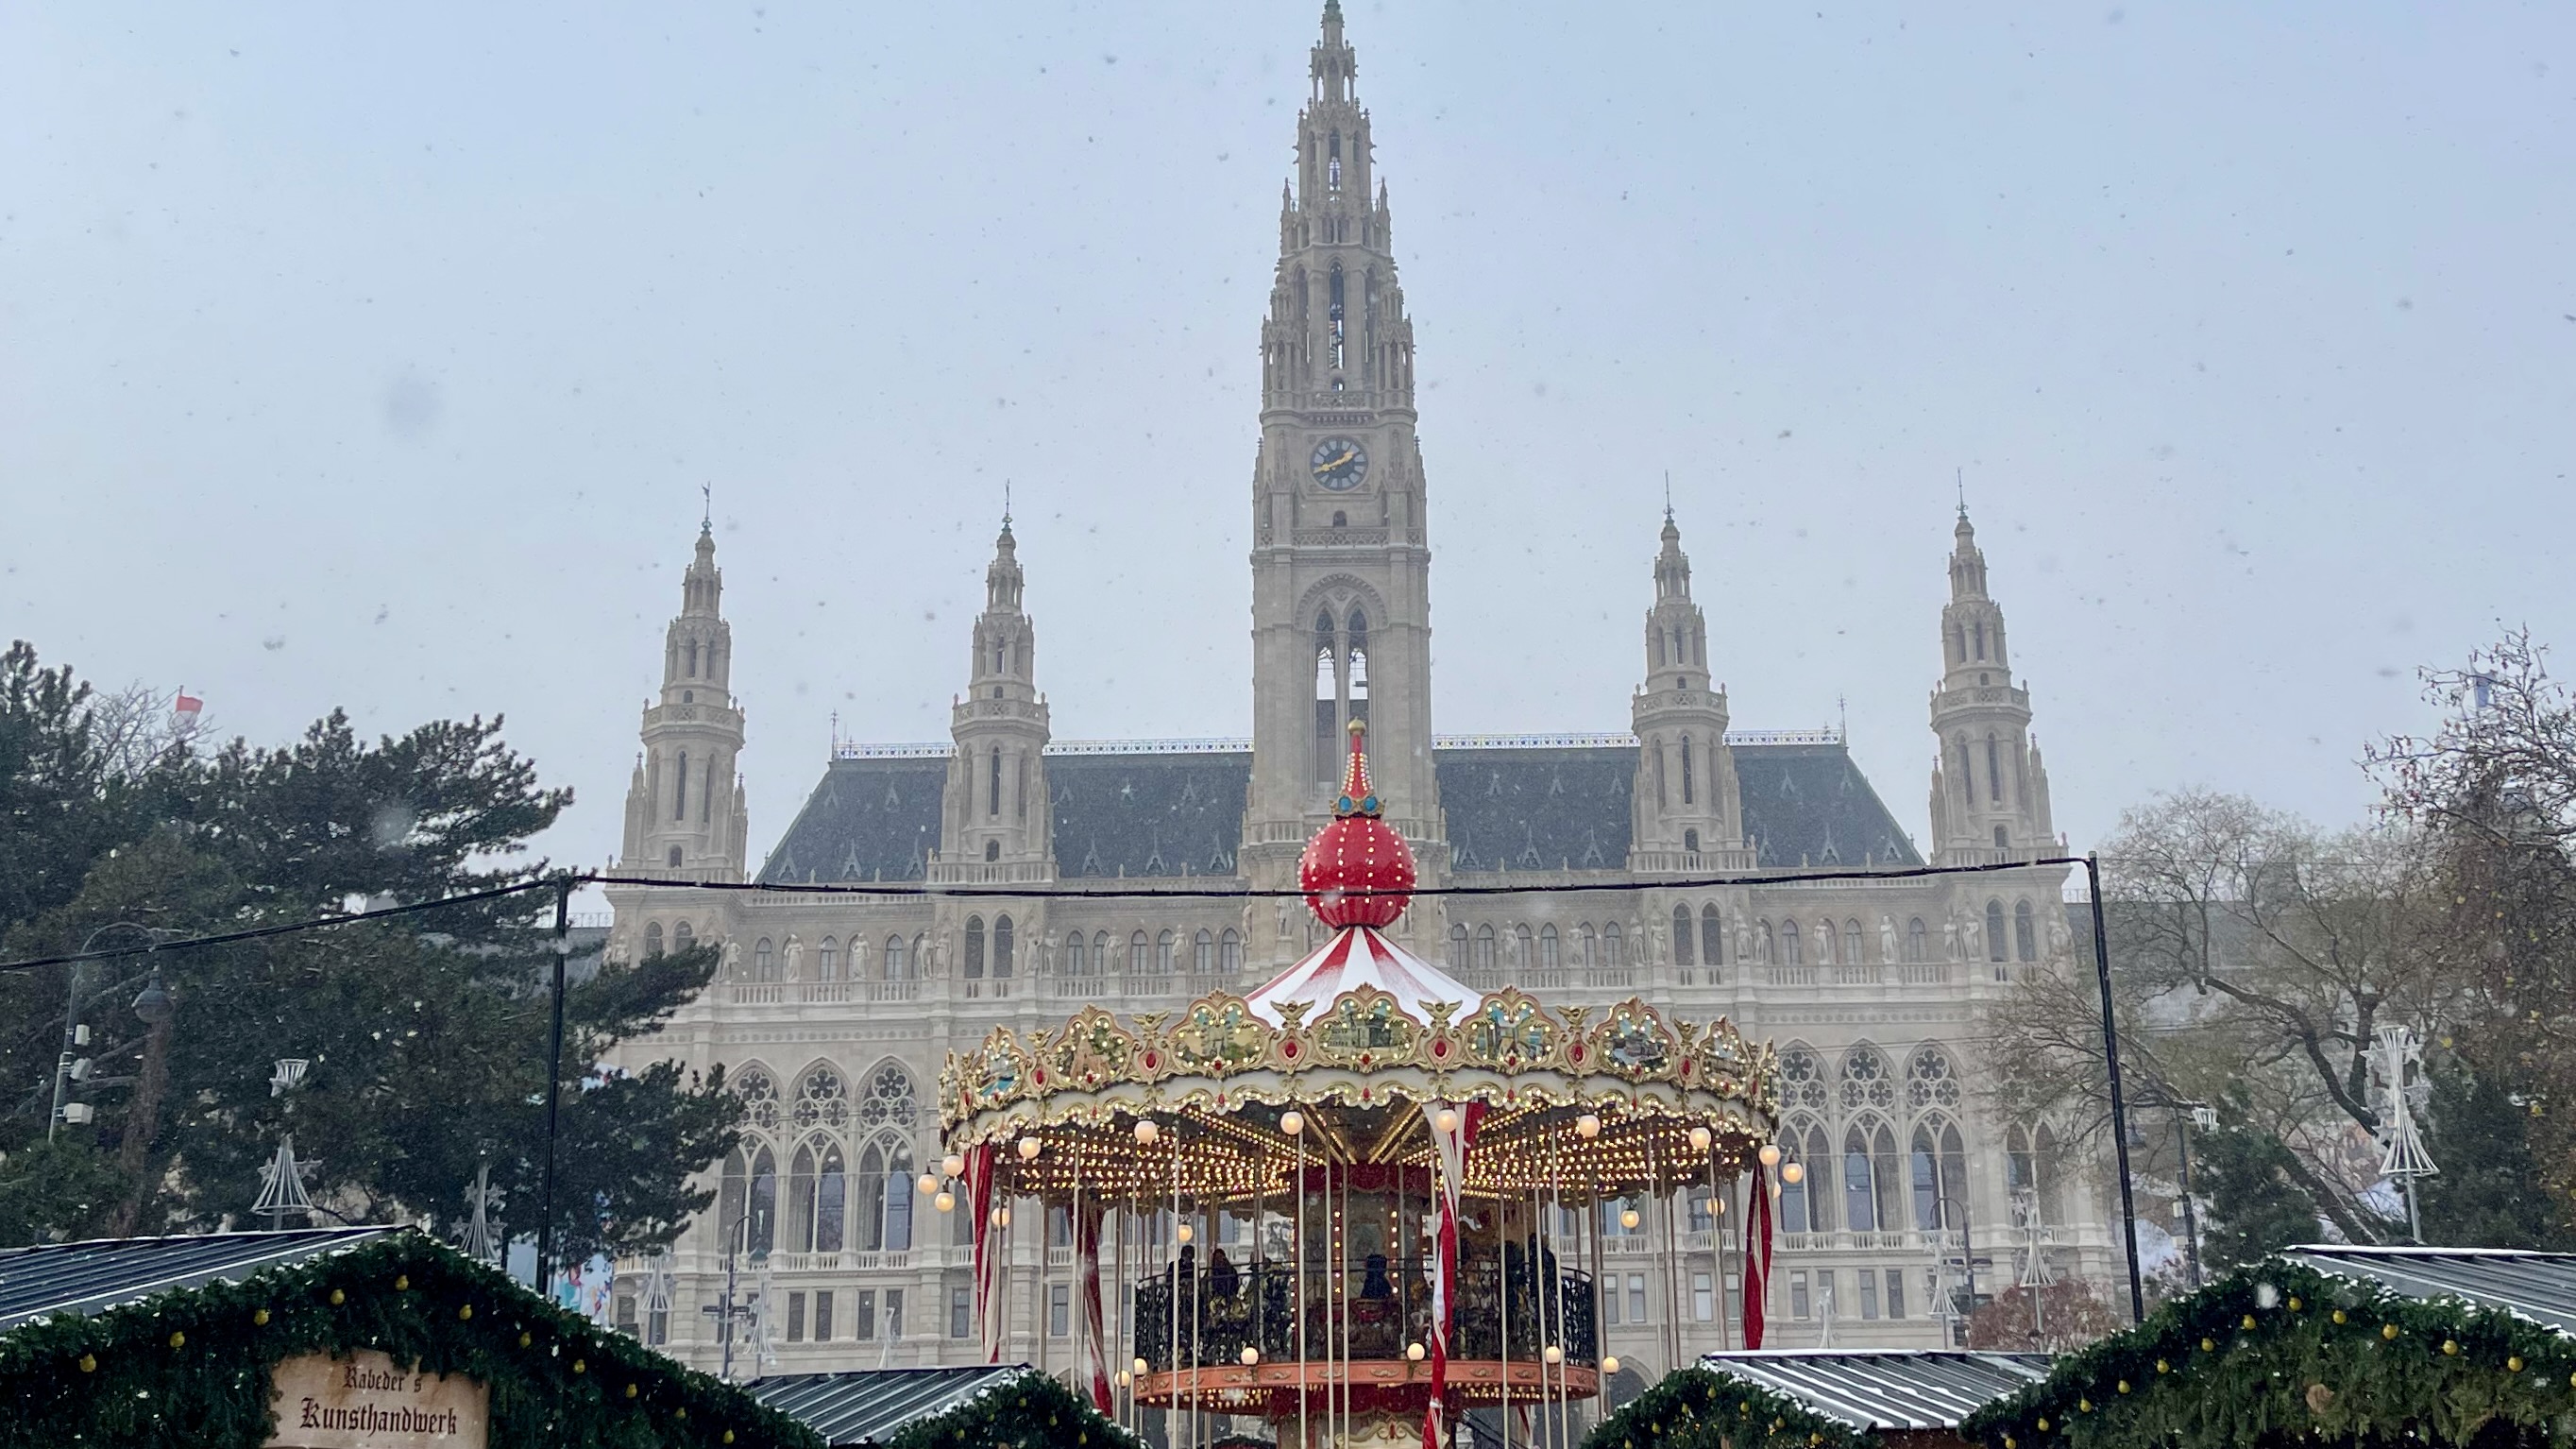 Vienna Rathausplatz christkindlmarkt on snowy day